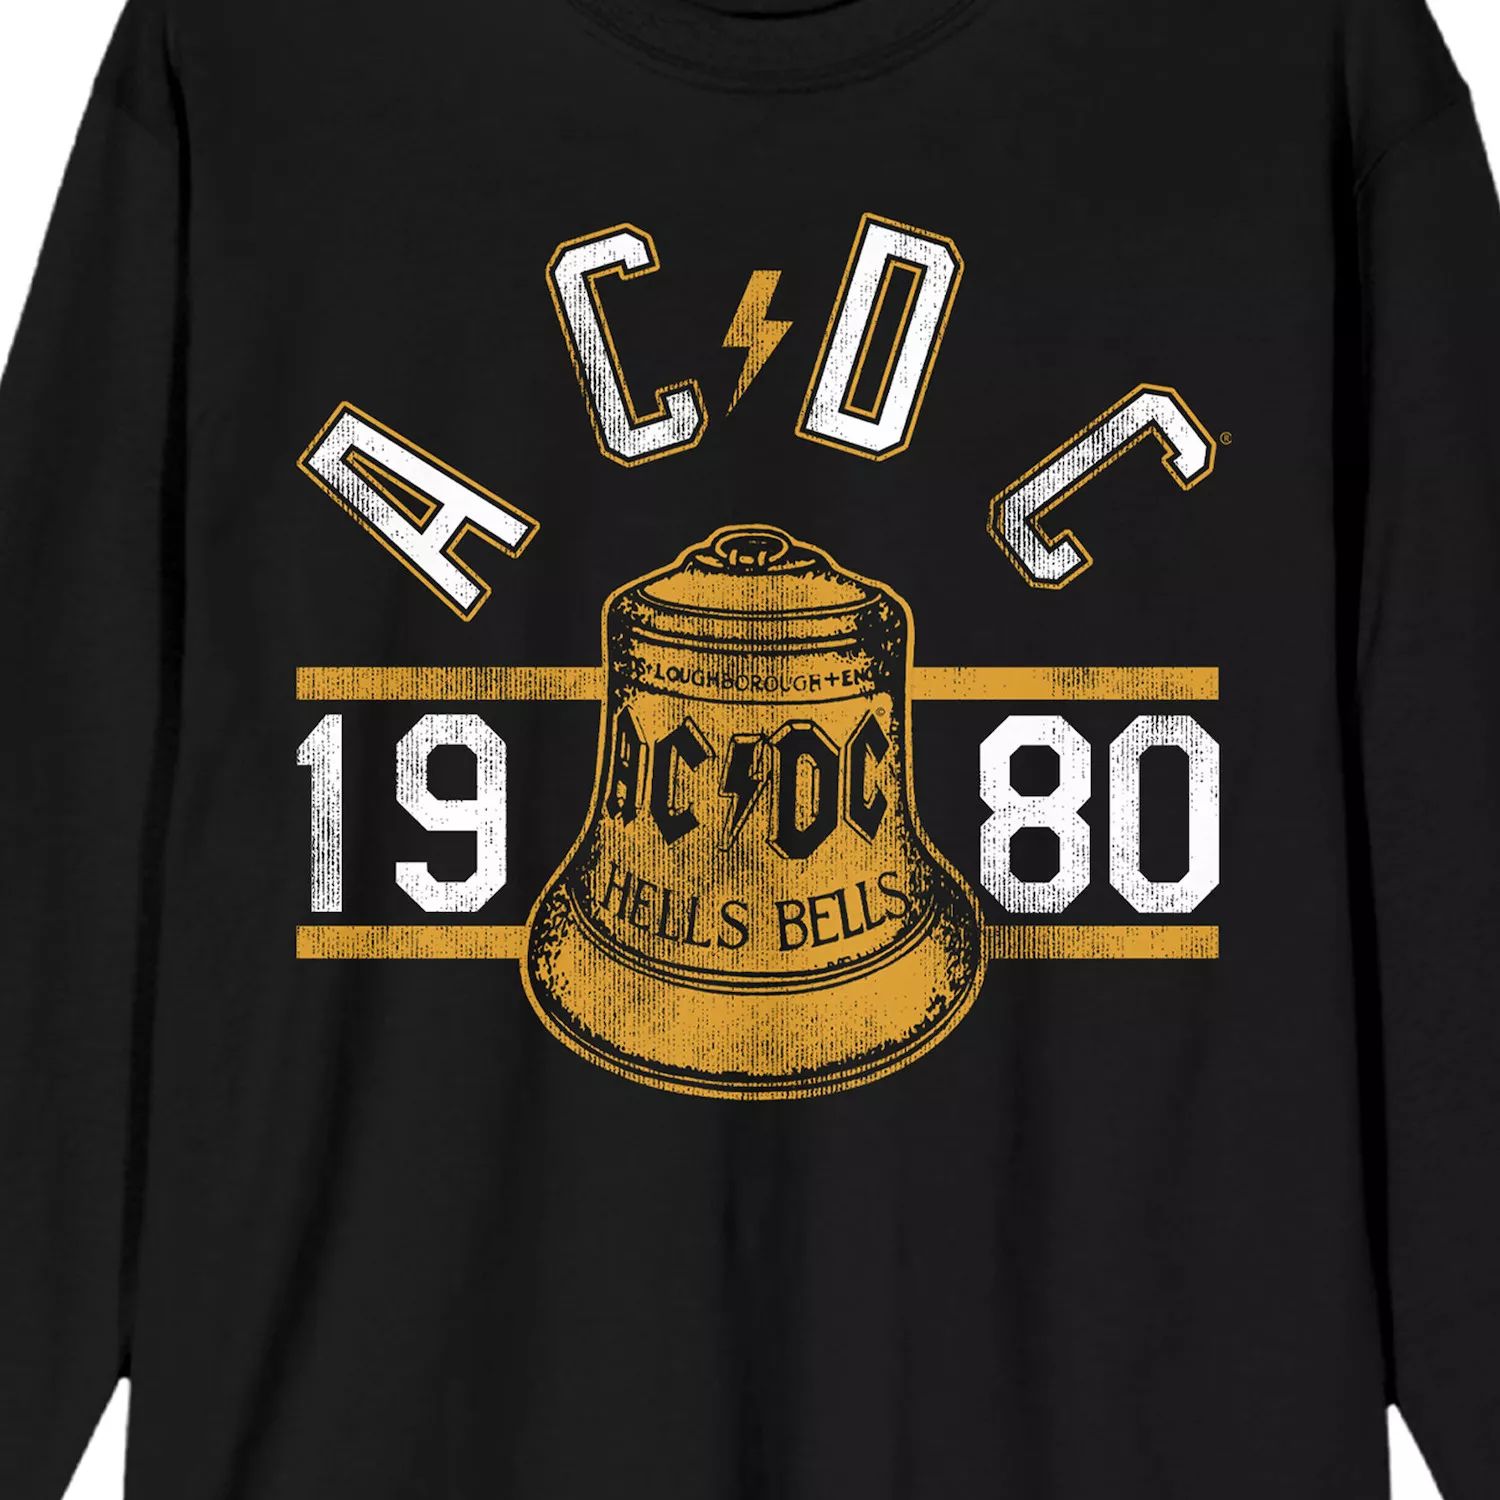 Мужская футболка AC/DC Hells Bells 1980 Licensed Character